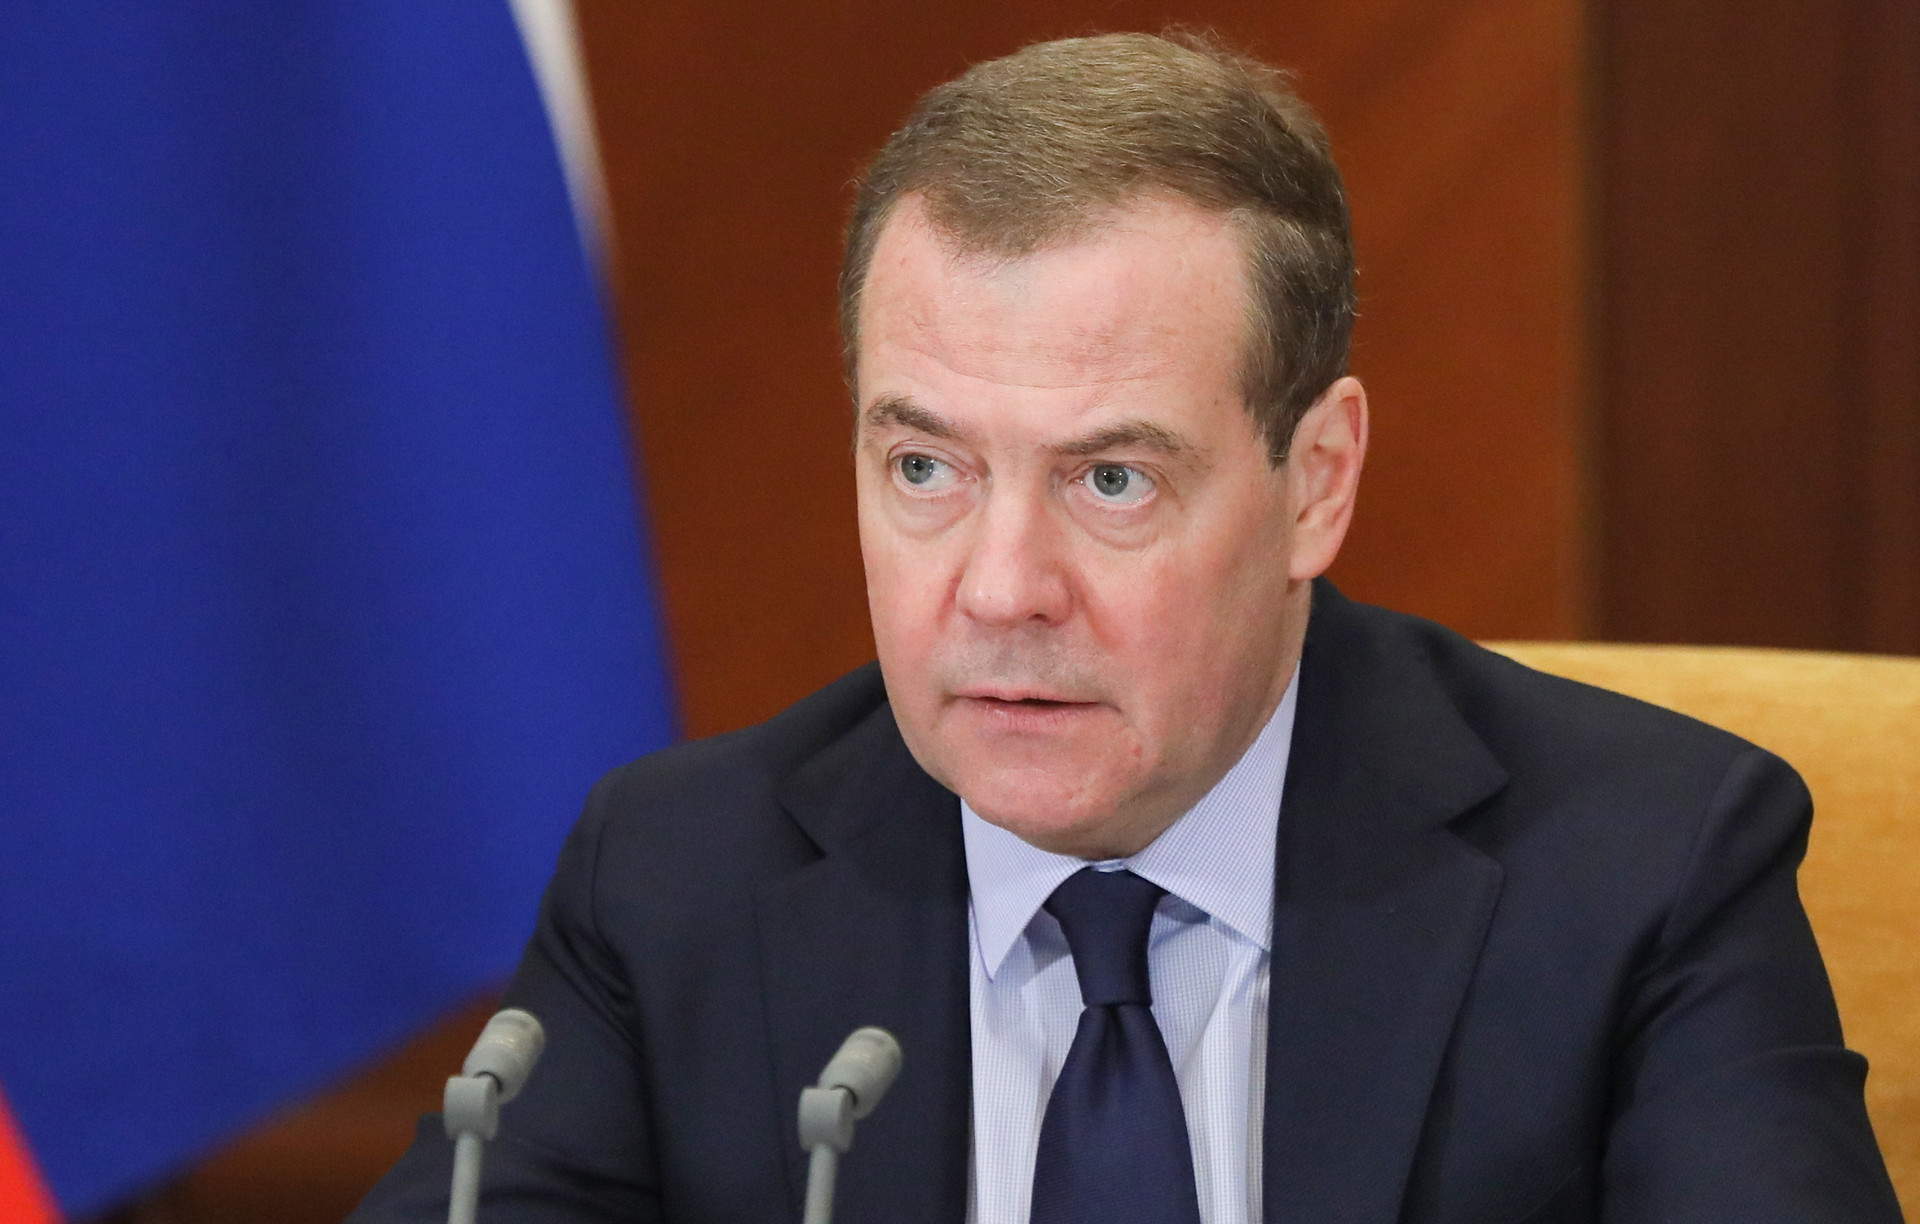 Ông Medvedev kêu gọi người dân Nga đoàn kết xung quanh Tổng thống Putin - 1